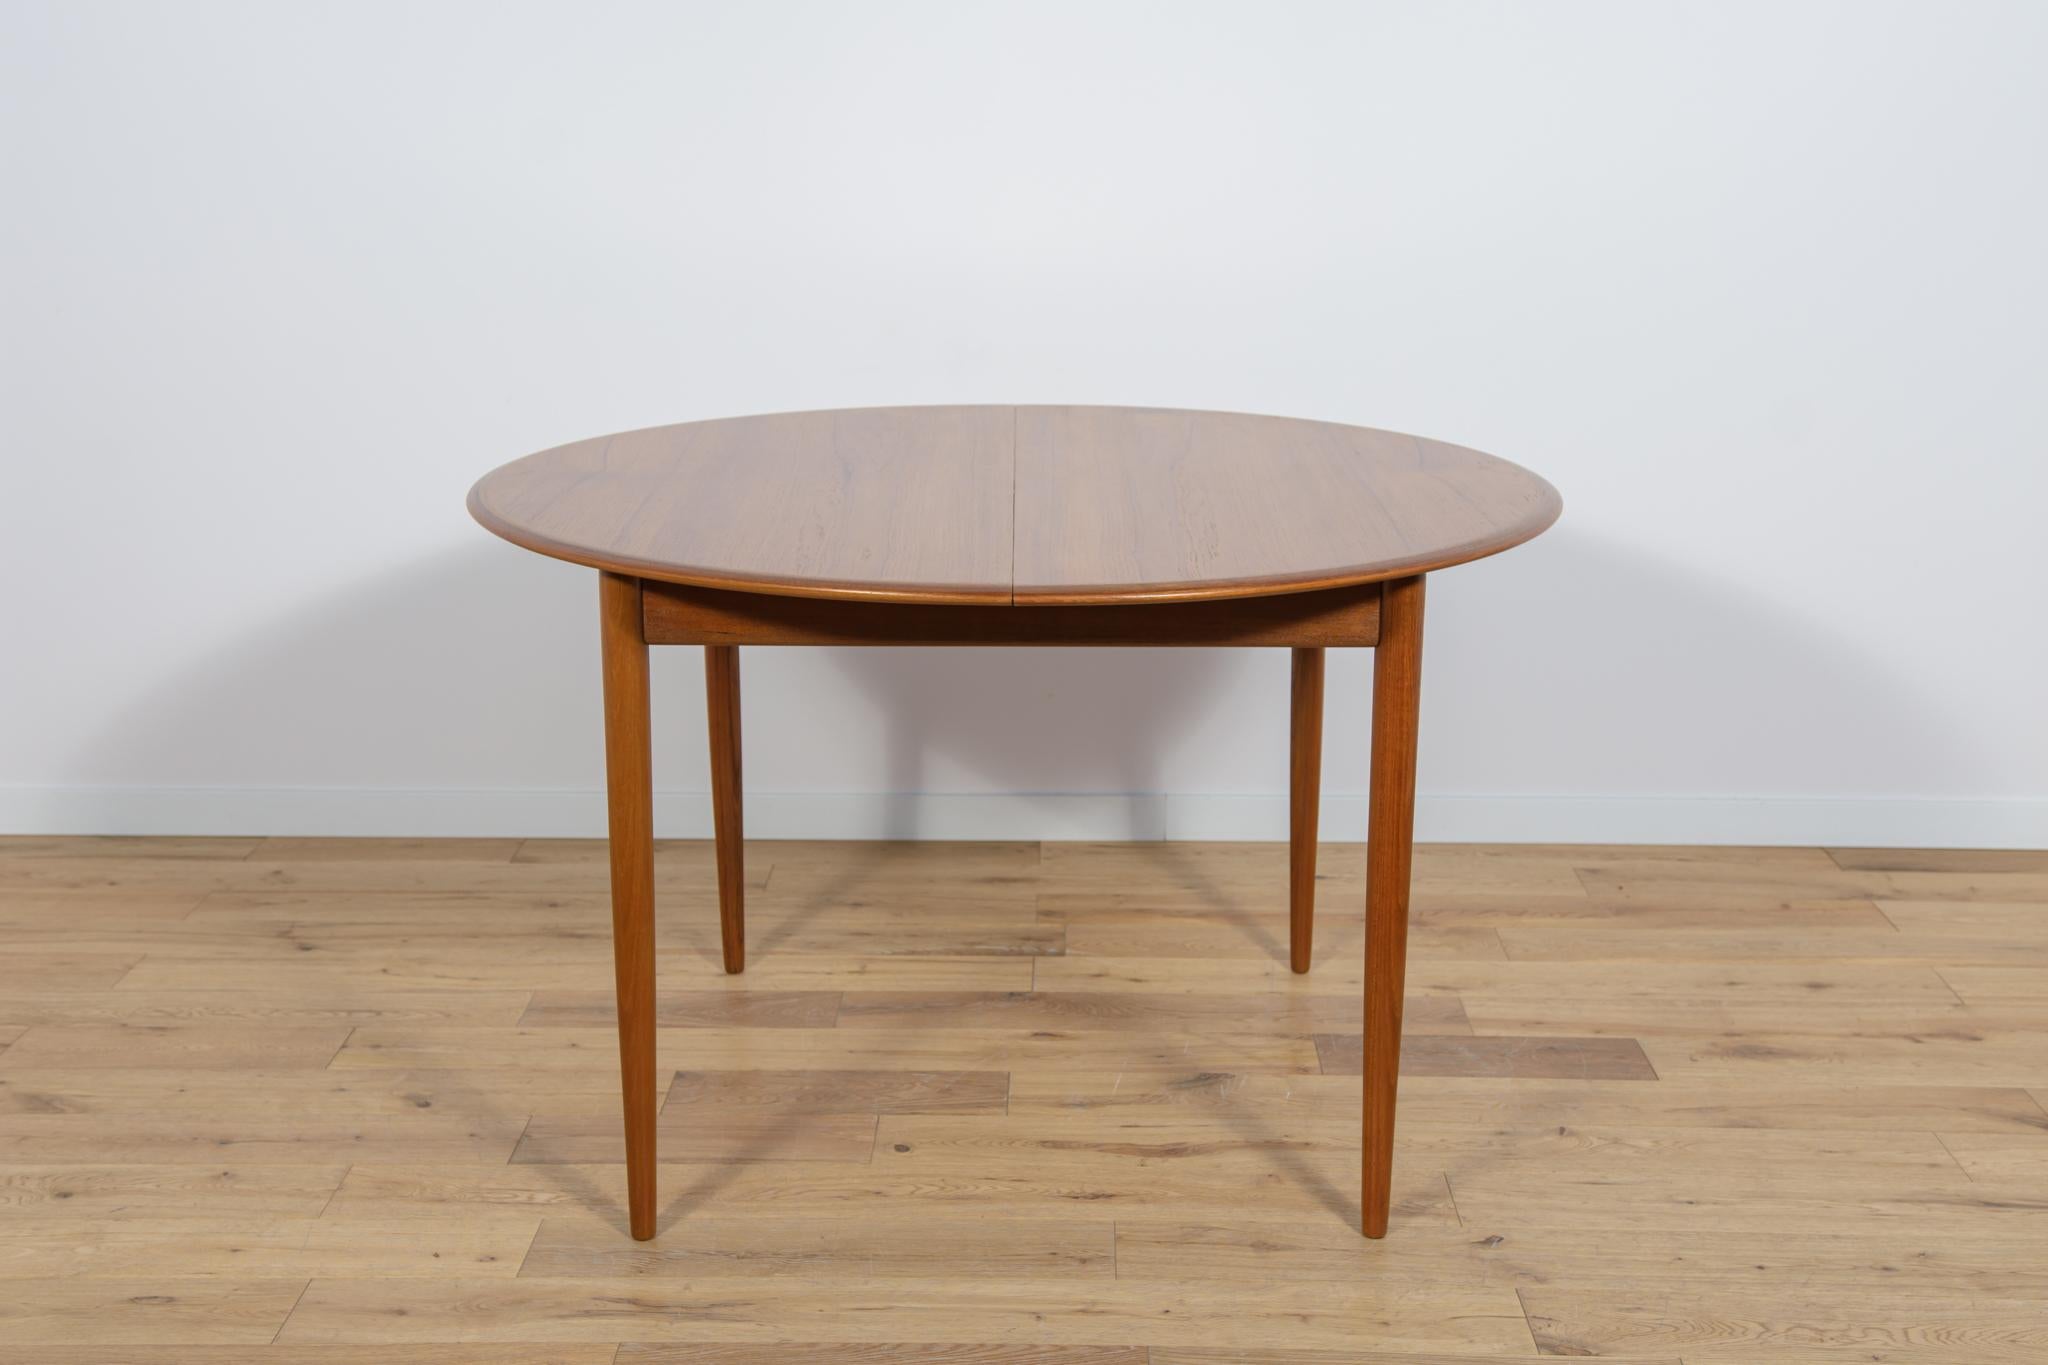 Der runde ausziehbare Tisch aus Teakholz wurde in den 1960er Jahren in Dänemark hergestellt. Der Tisch hat massive, profilierte Kanten, die ihm eine elegante, erhabene Form verleihen. Der Tisch wurde komplett renoviert, von alten Beschichtungen